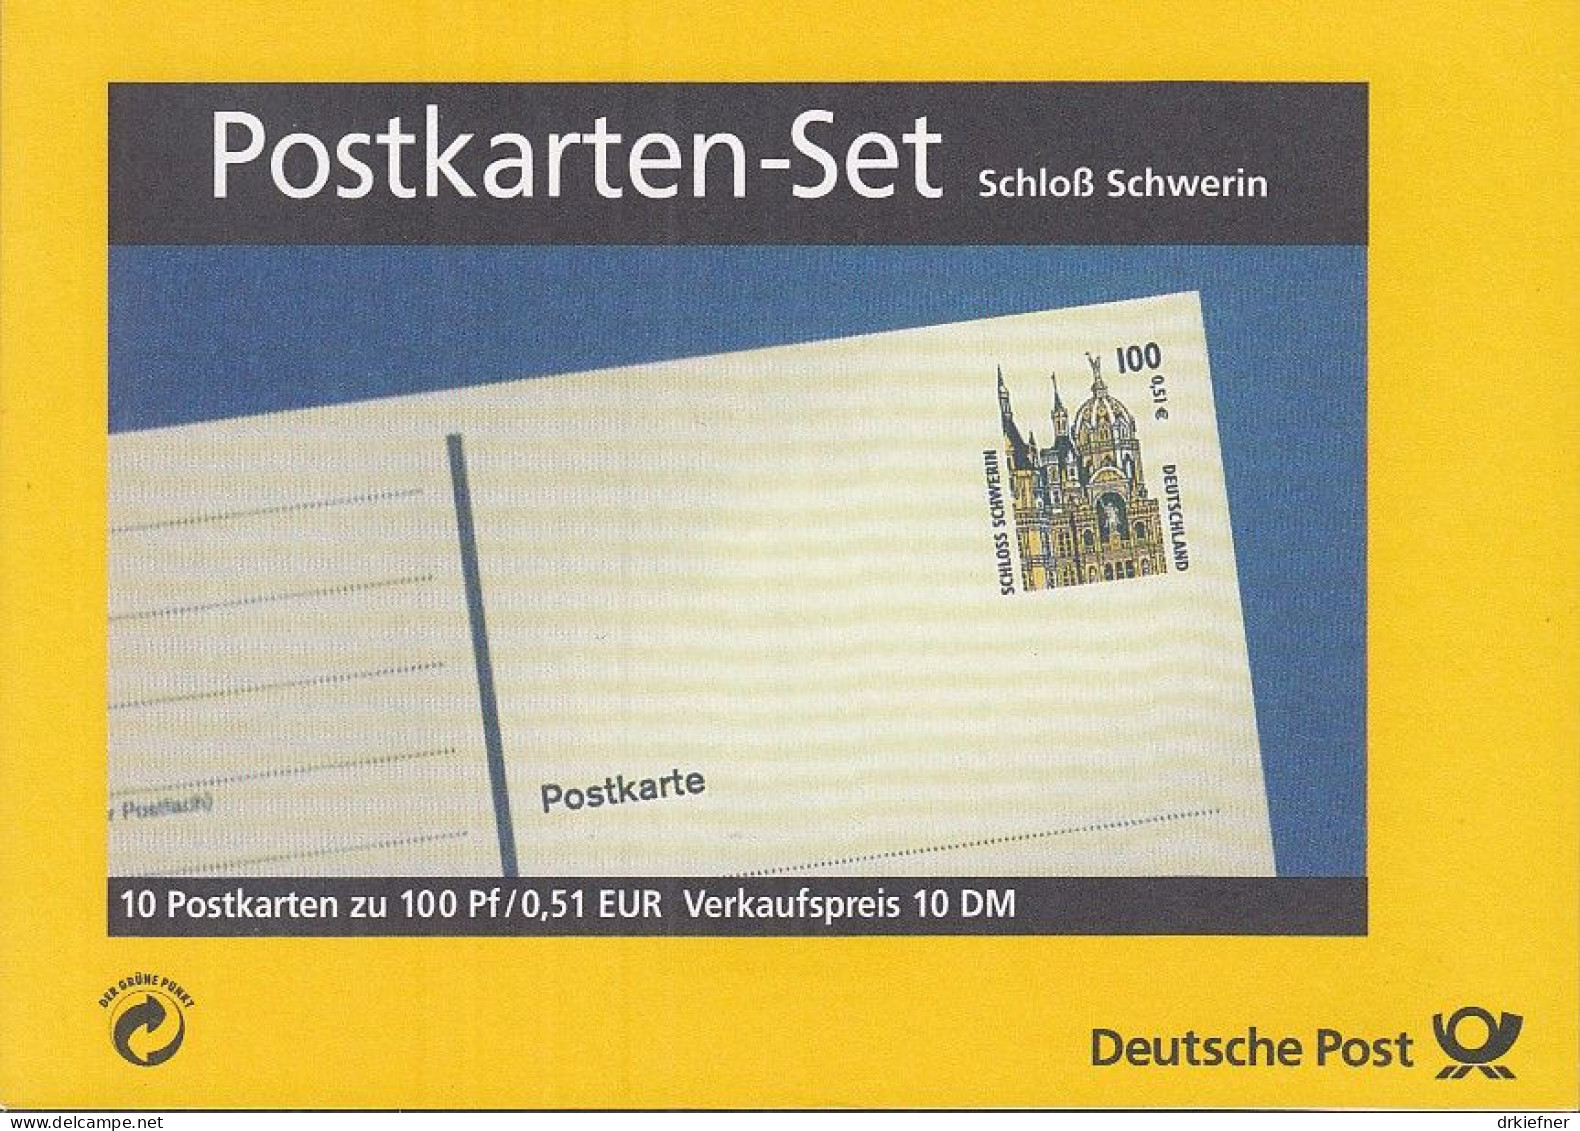 BRD PH 2 A, Postkartenheft, Ungebraucht, Schloss Schwerin, 2001 - Postcards - Mint